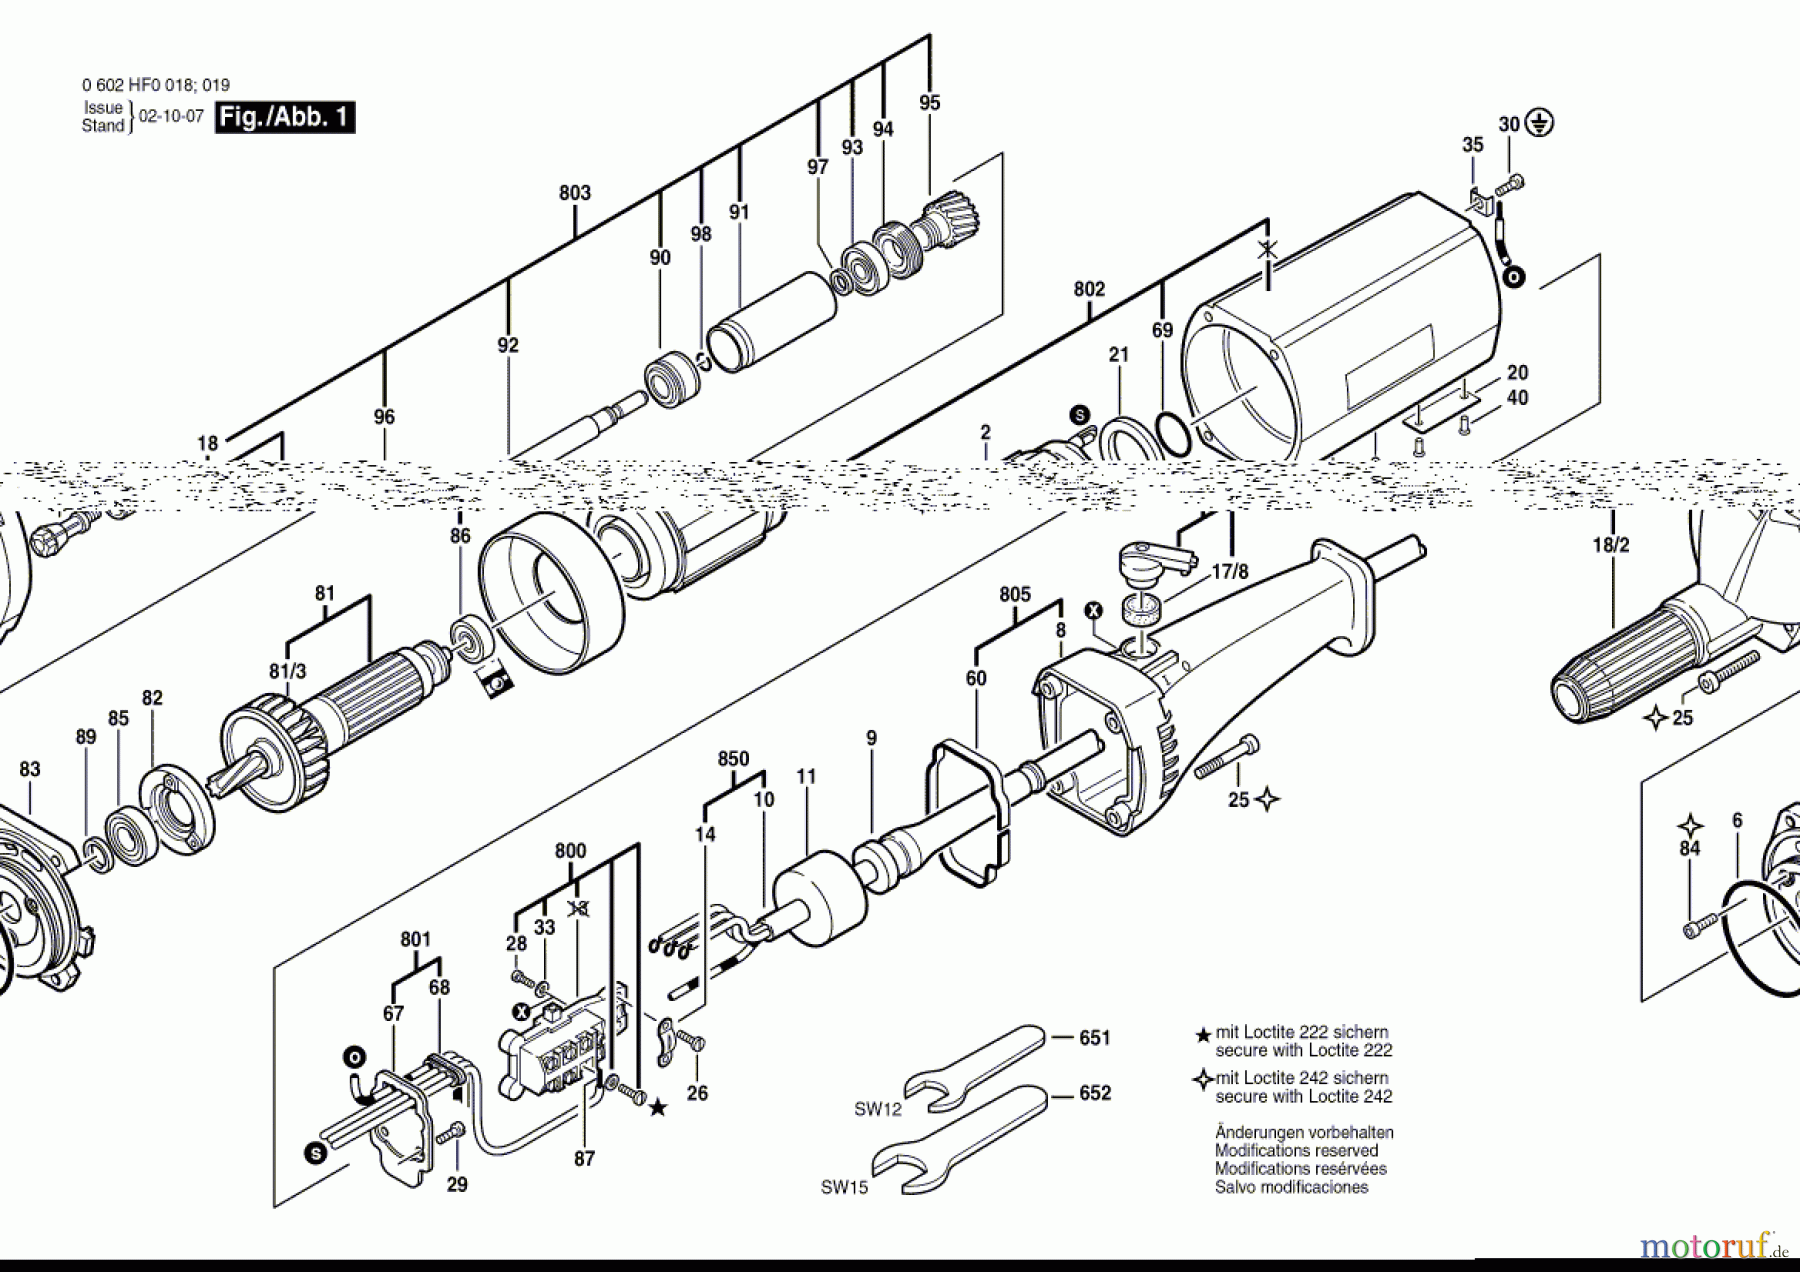  Bosch Werkzeug Hf-Geradschleifer GR.65 Seite 1